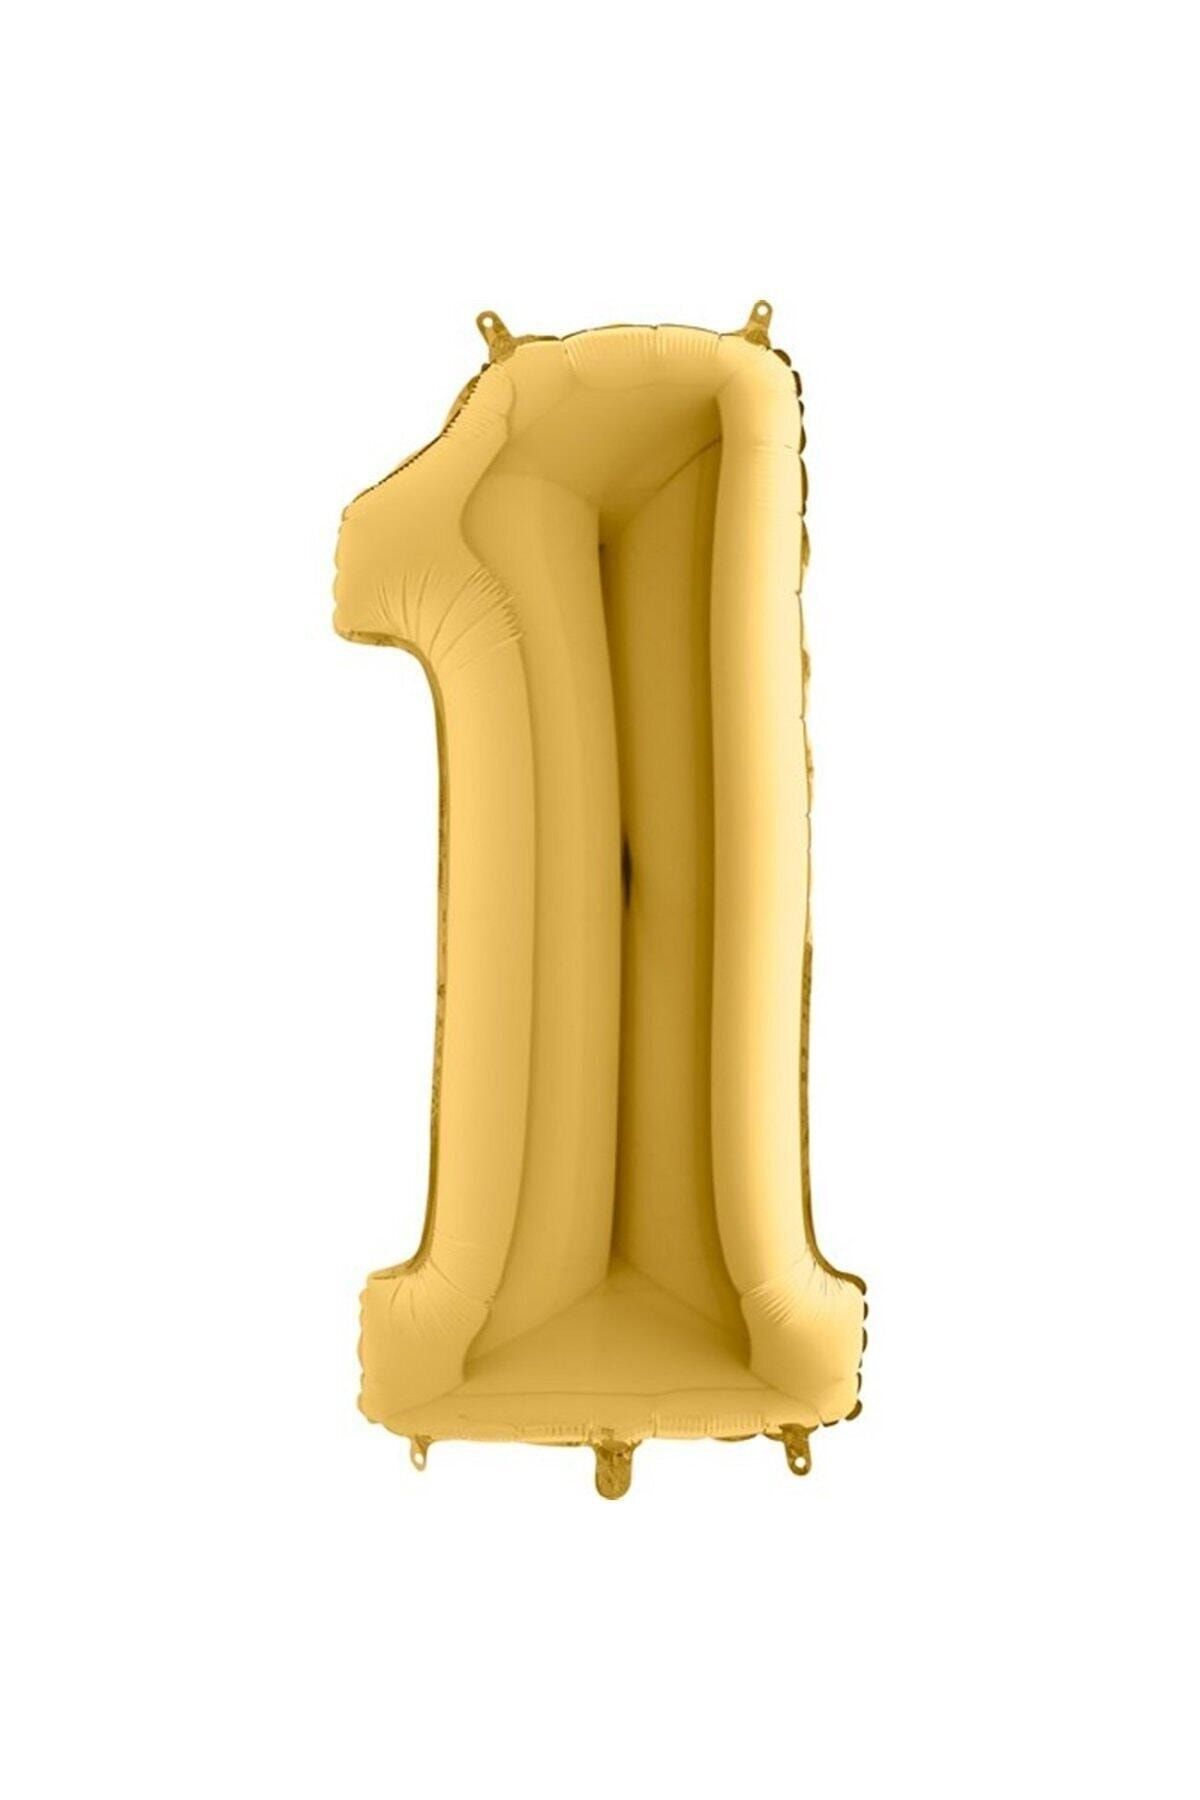 Huzur Party Store 100cm Büyük Folyo Balon 40 Inc Sarı Altın Gold 1 Rakamı